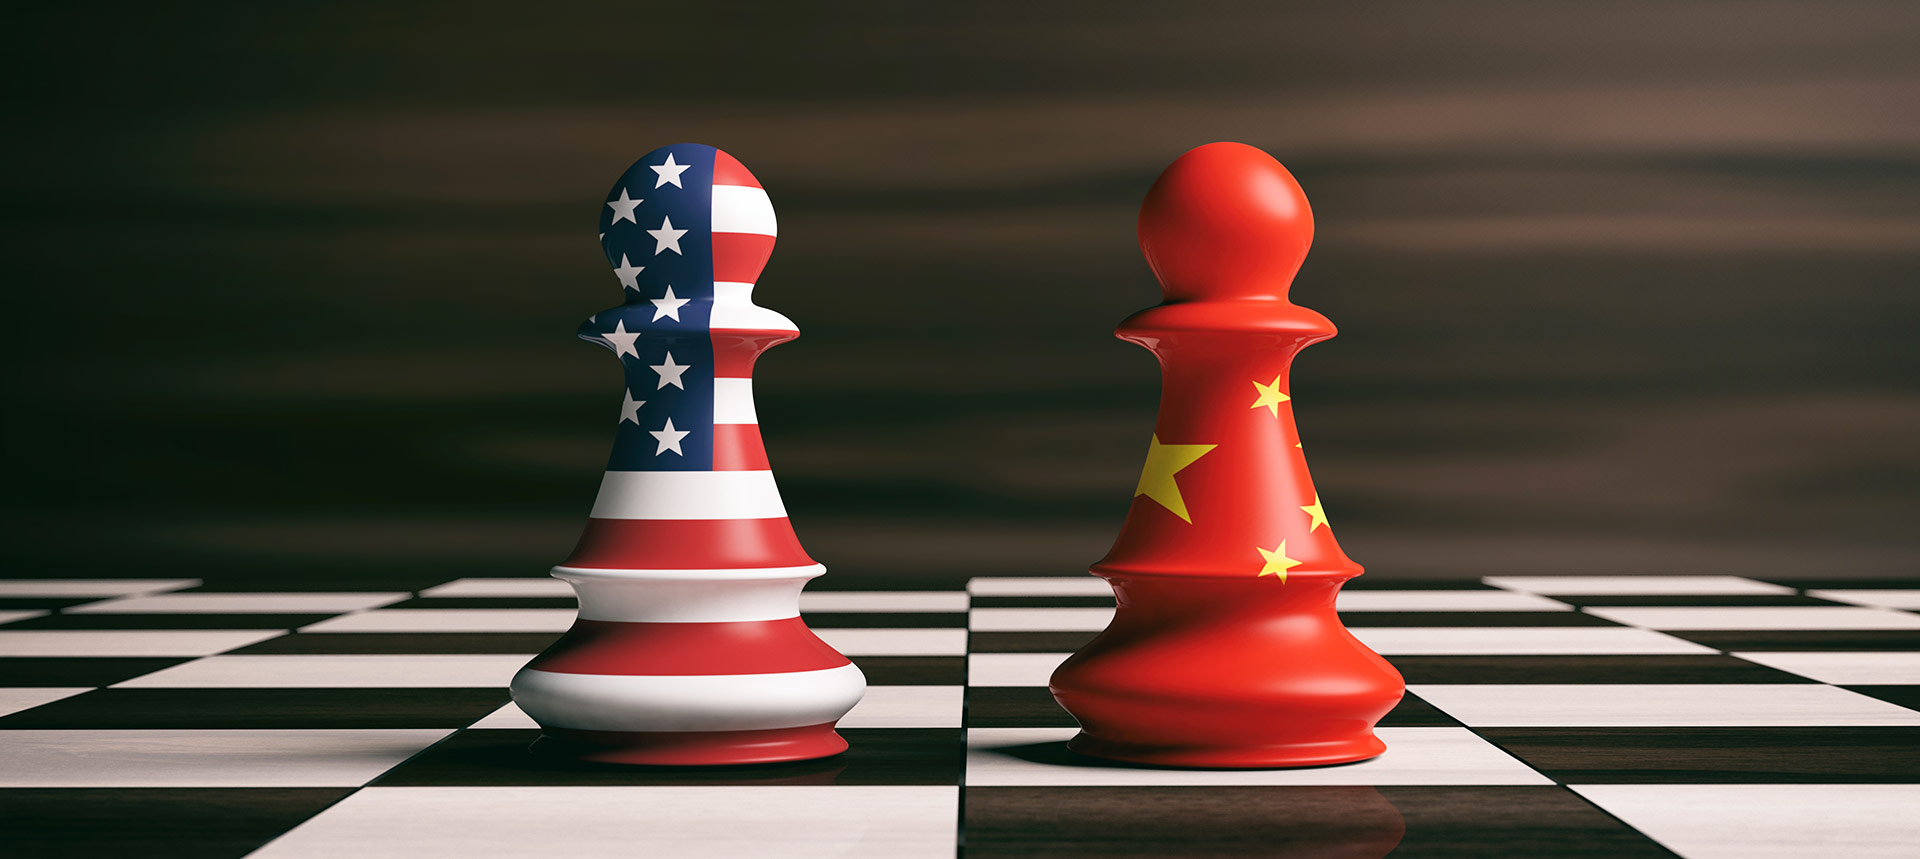 US China relations, US news, China news, US China rivalry, US China war, Thucydides’ Trap, War China America, Modern history, Kevin Johnston, US history